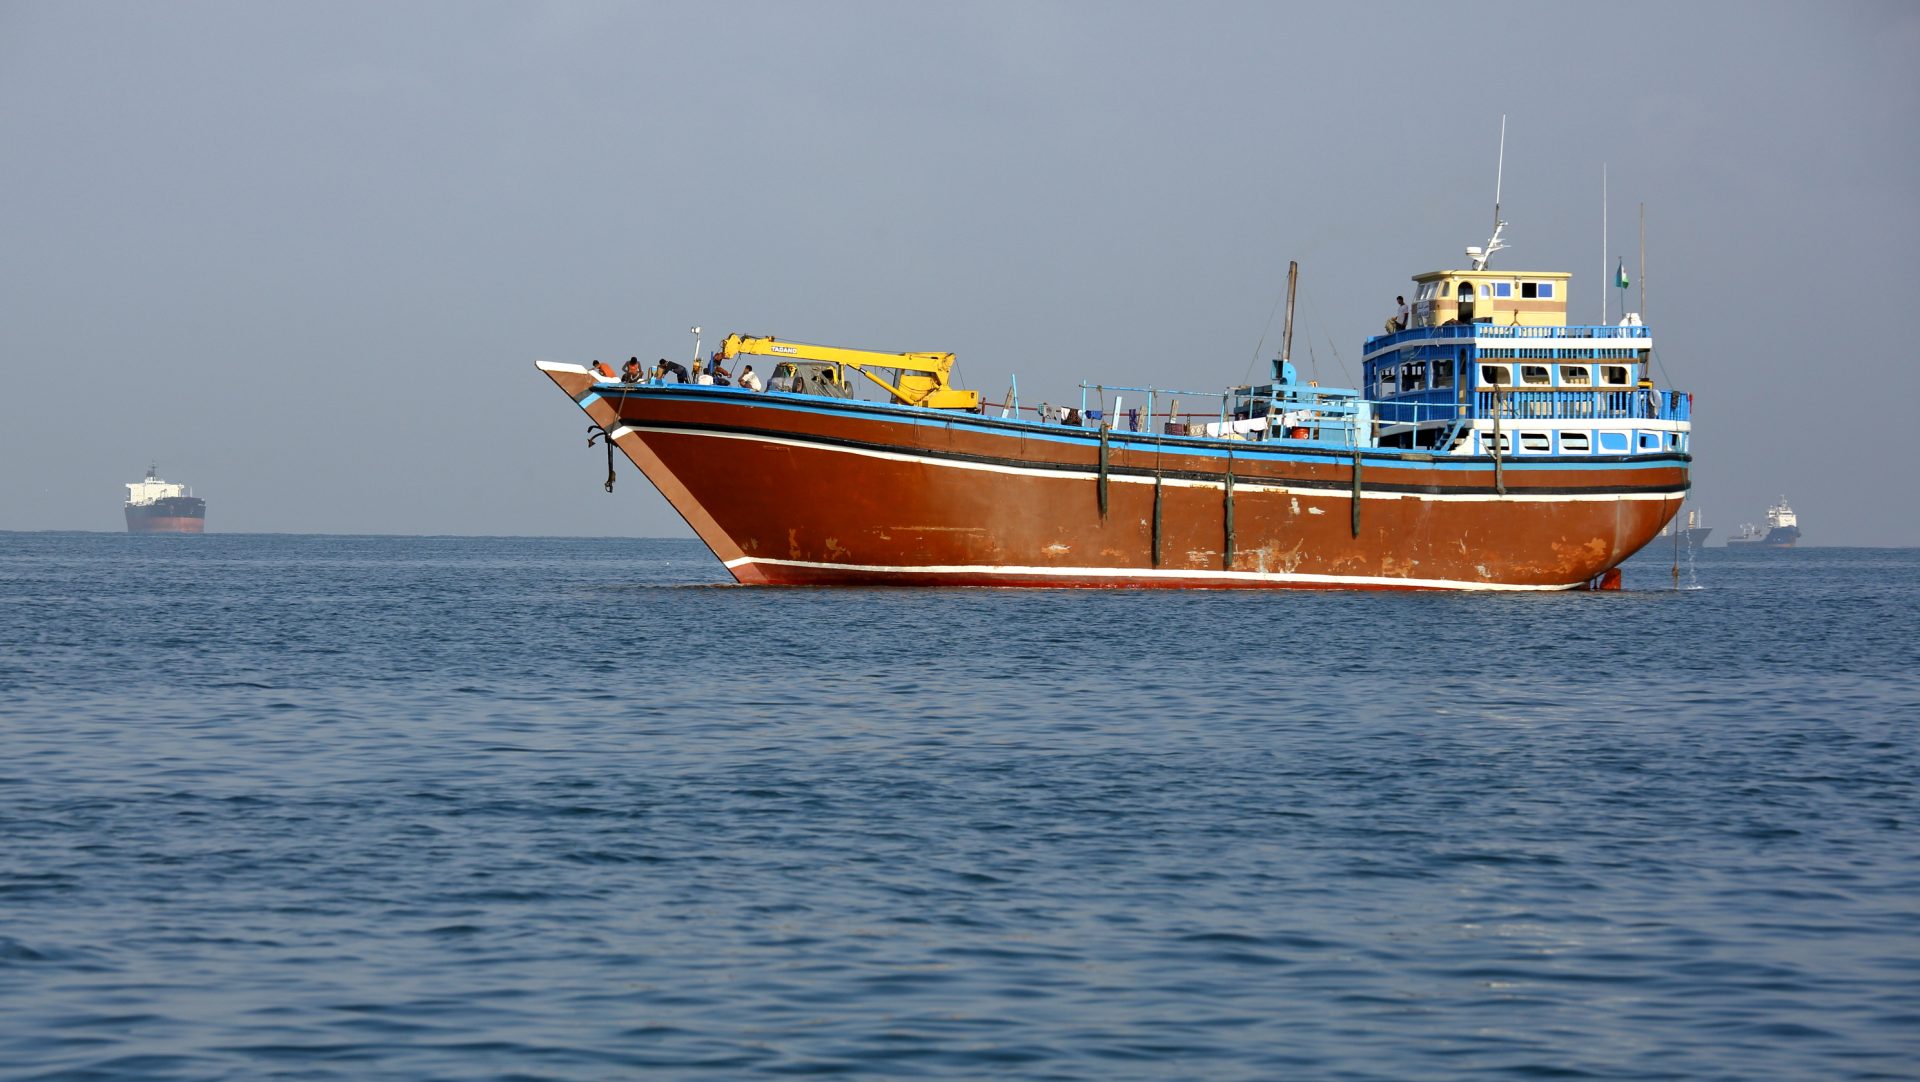 Rebeldes do Iémen vão continuar com ataques no Mar Vermelho